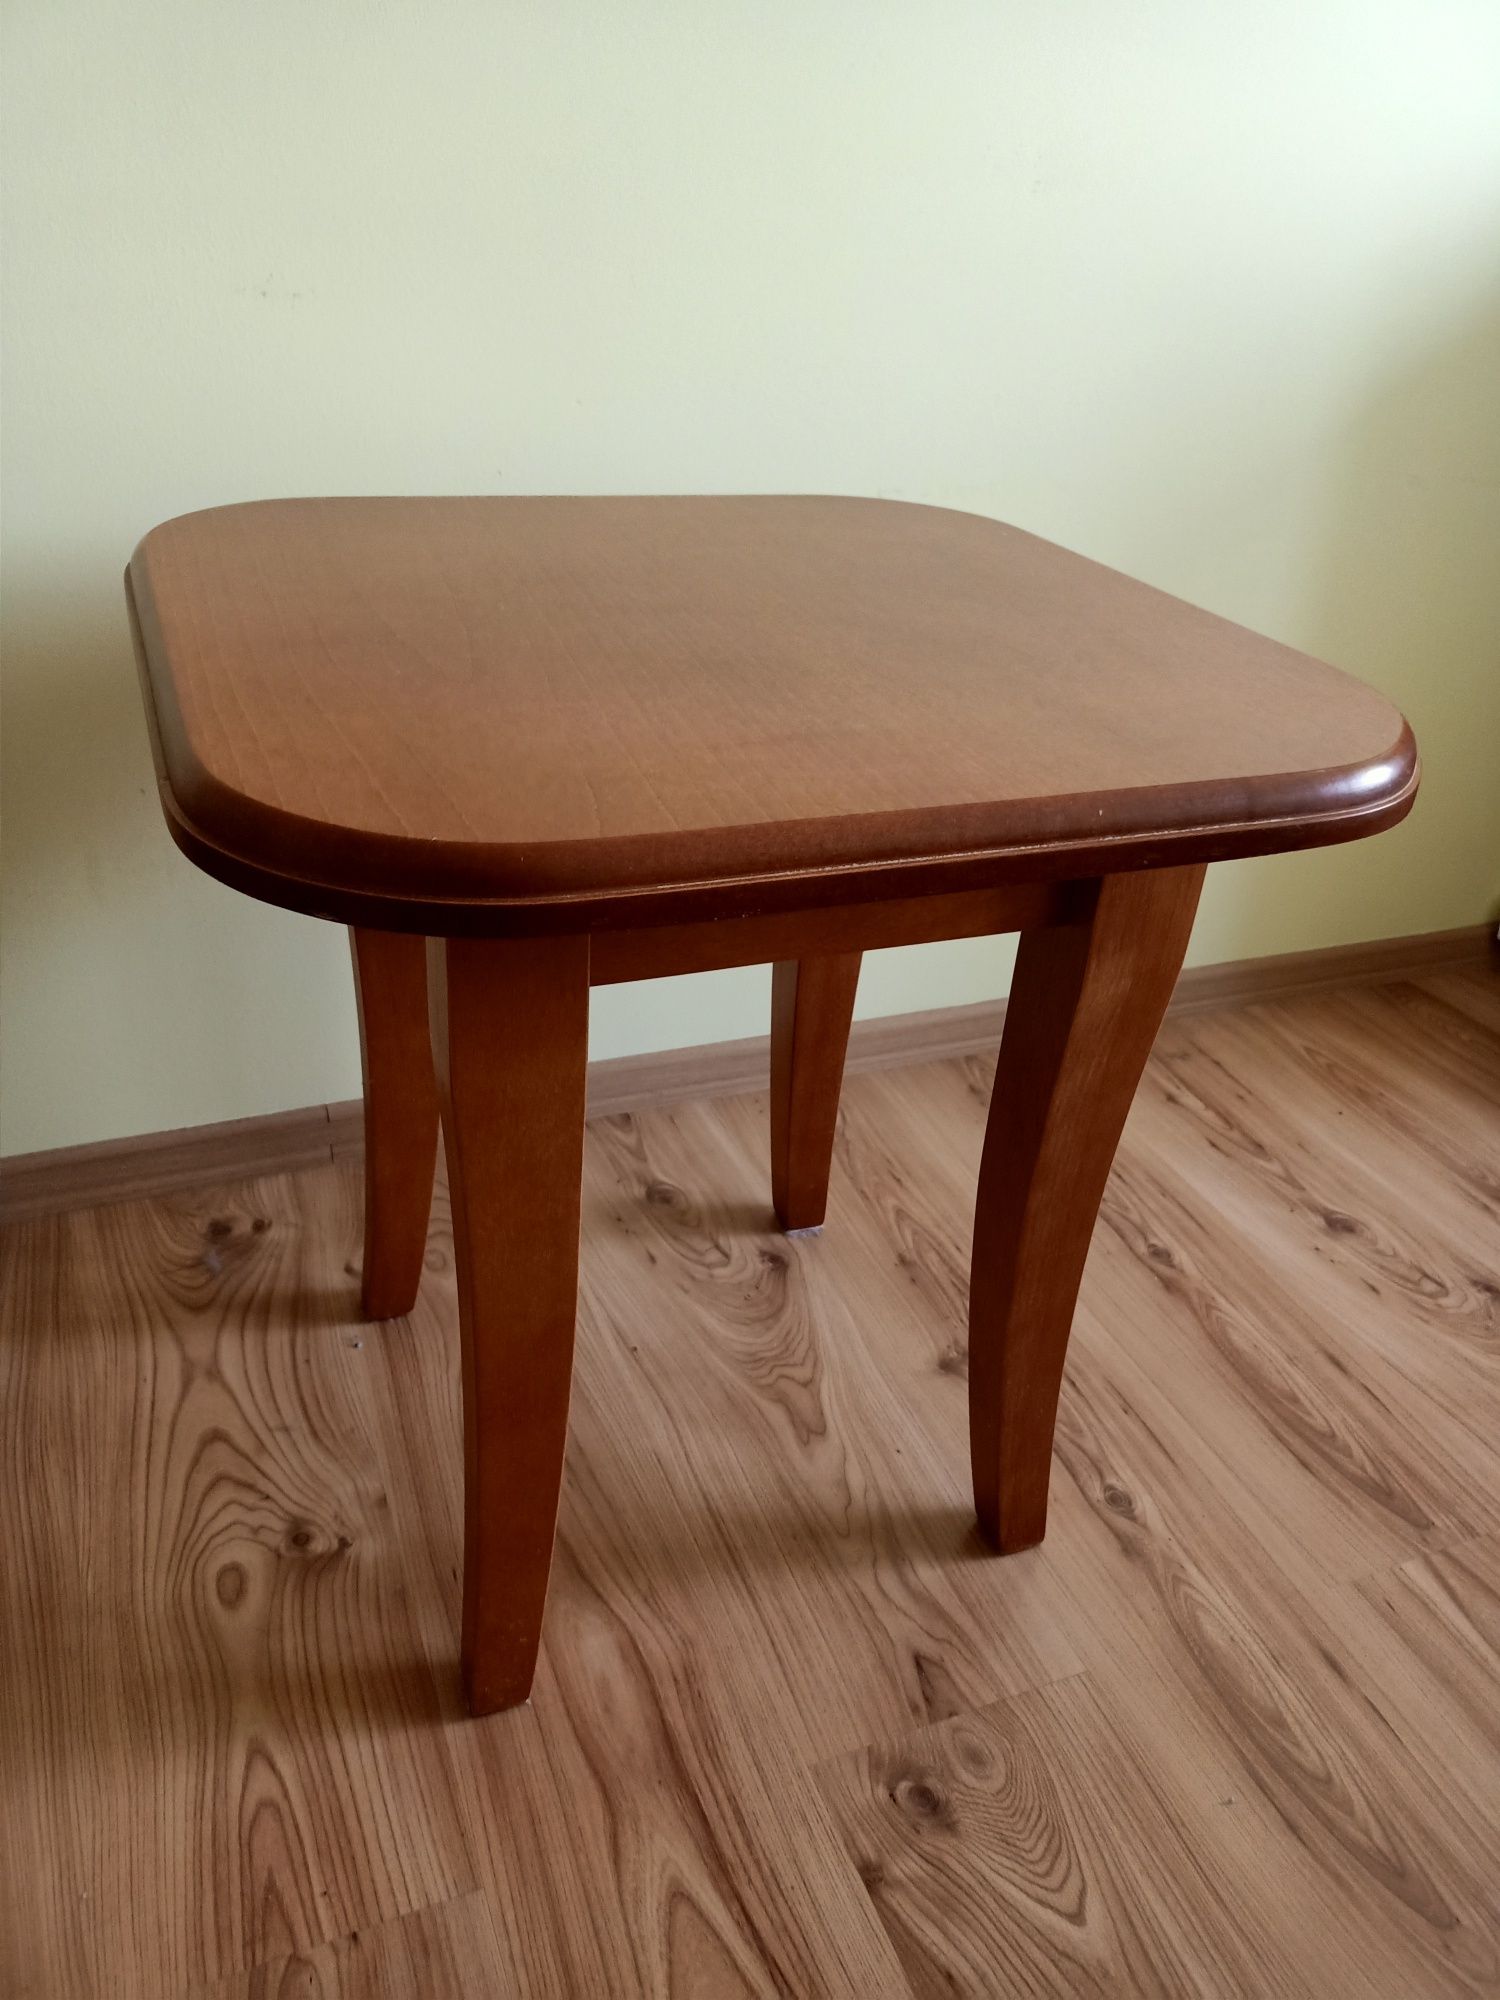 Stół - drewniany stolik